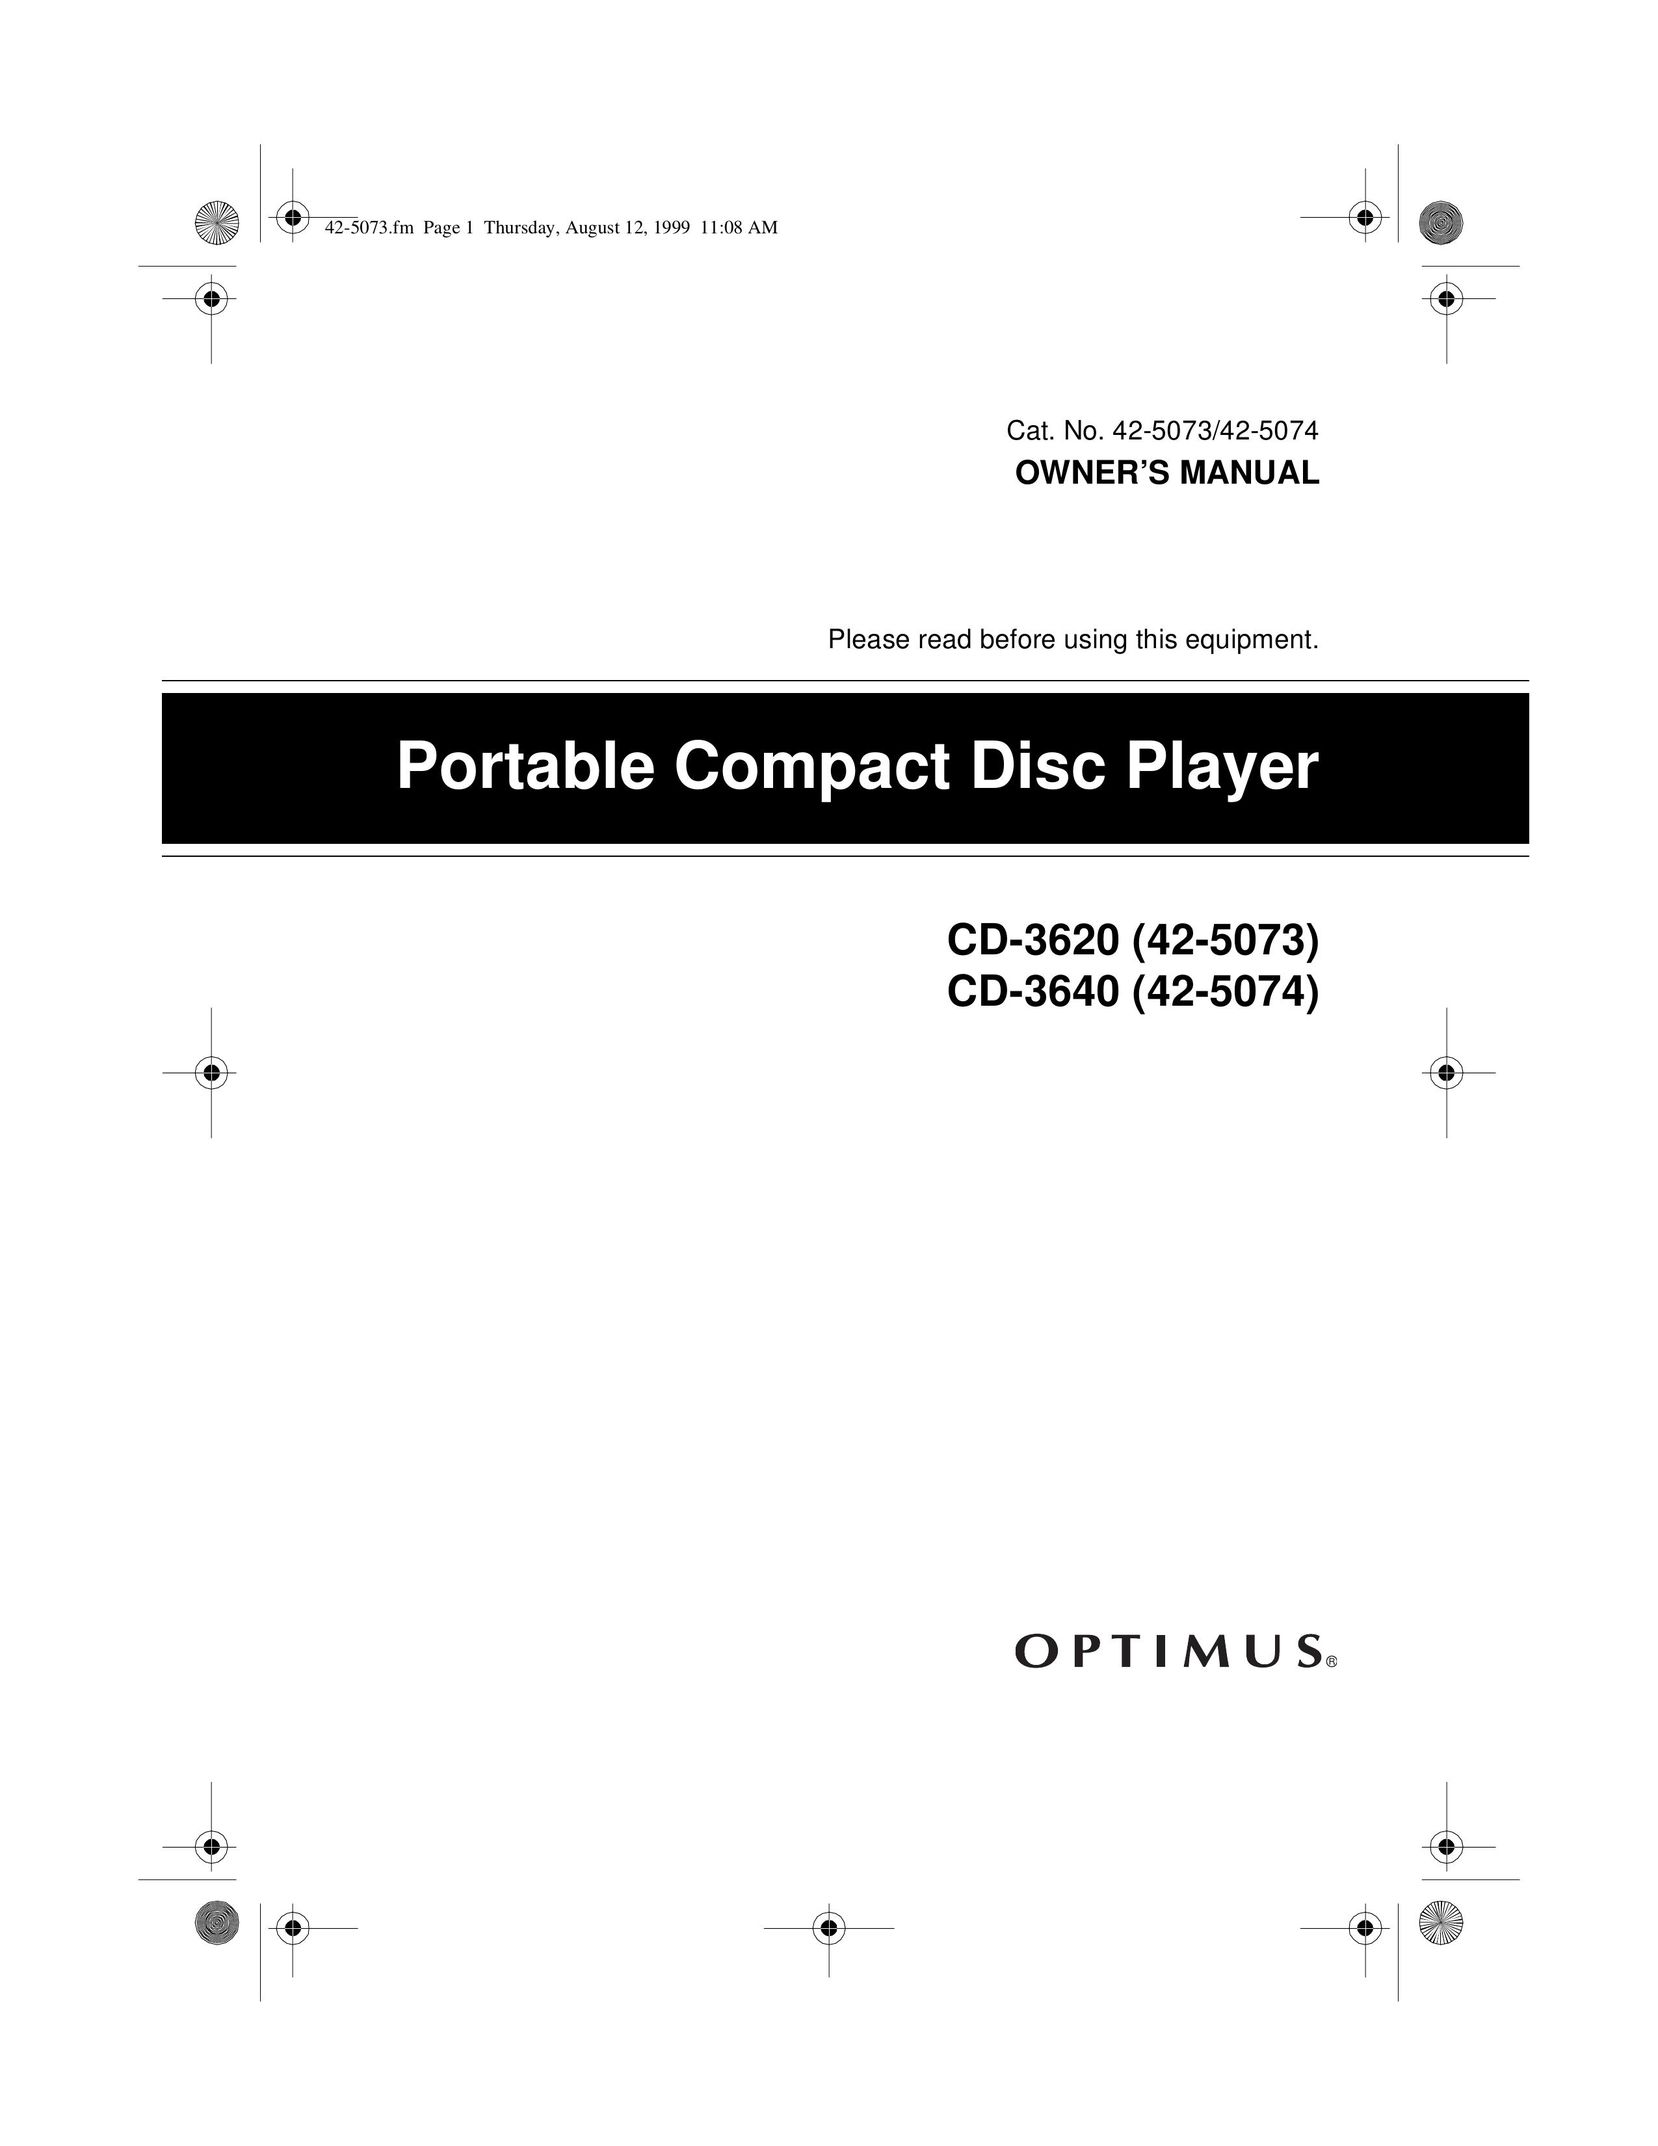 Optimus CD-3620 Portable CD Player User Manual